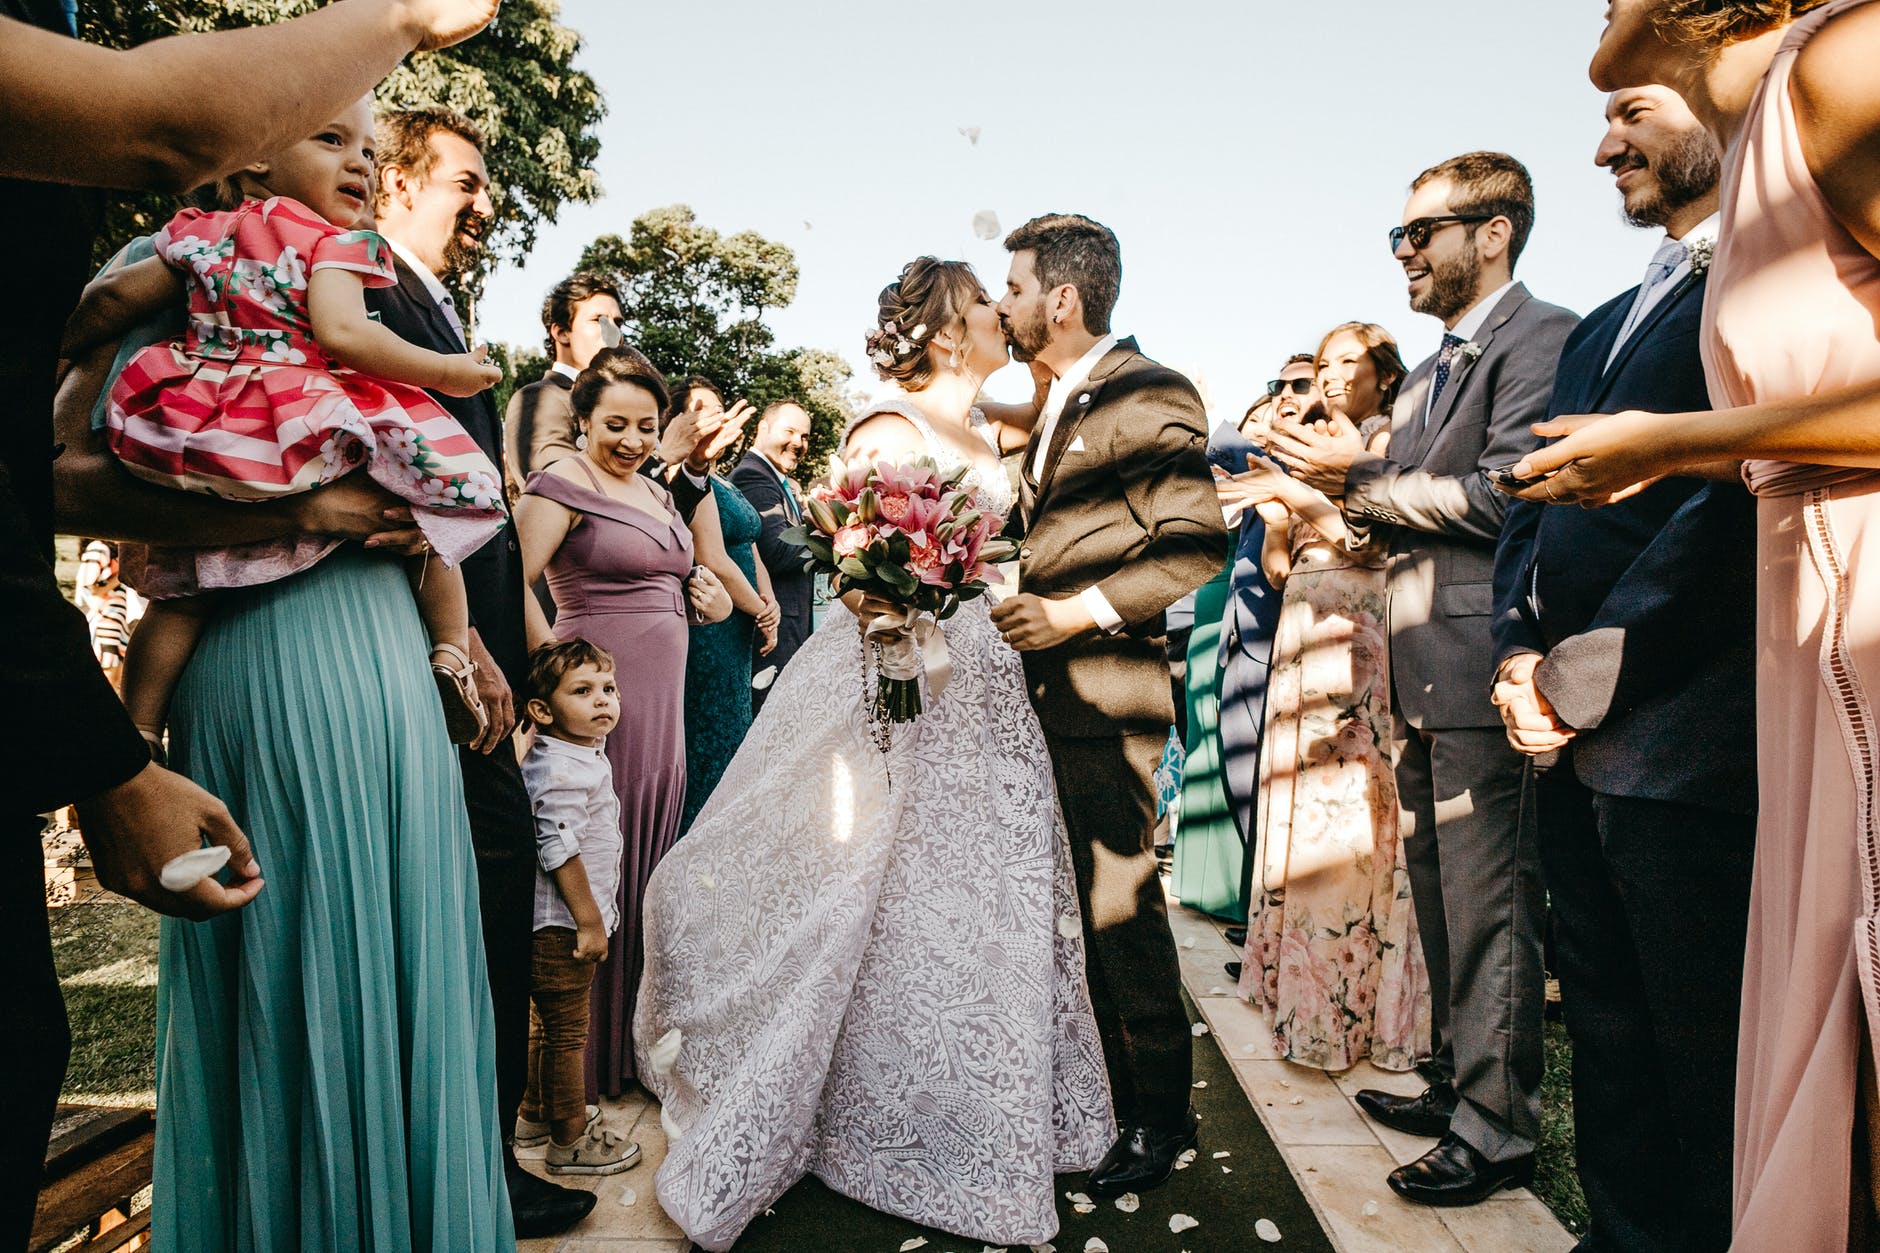 Una pareja de recién casados se da un beso mientras a su alrededor todos celebran. | Foto: Pexels